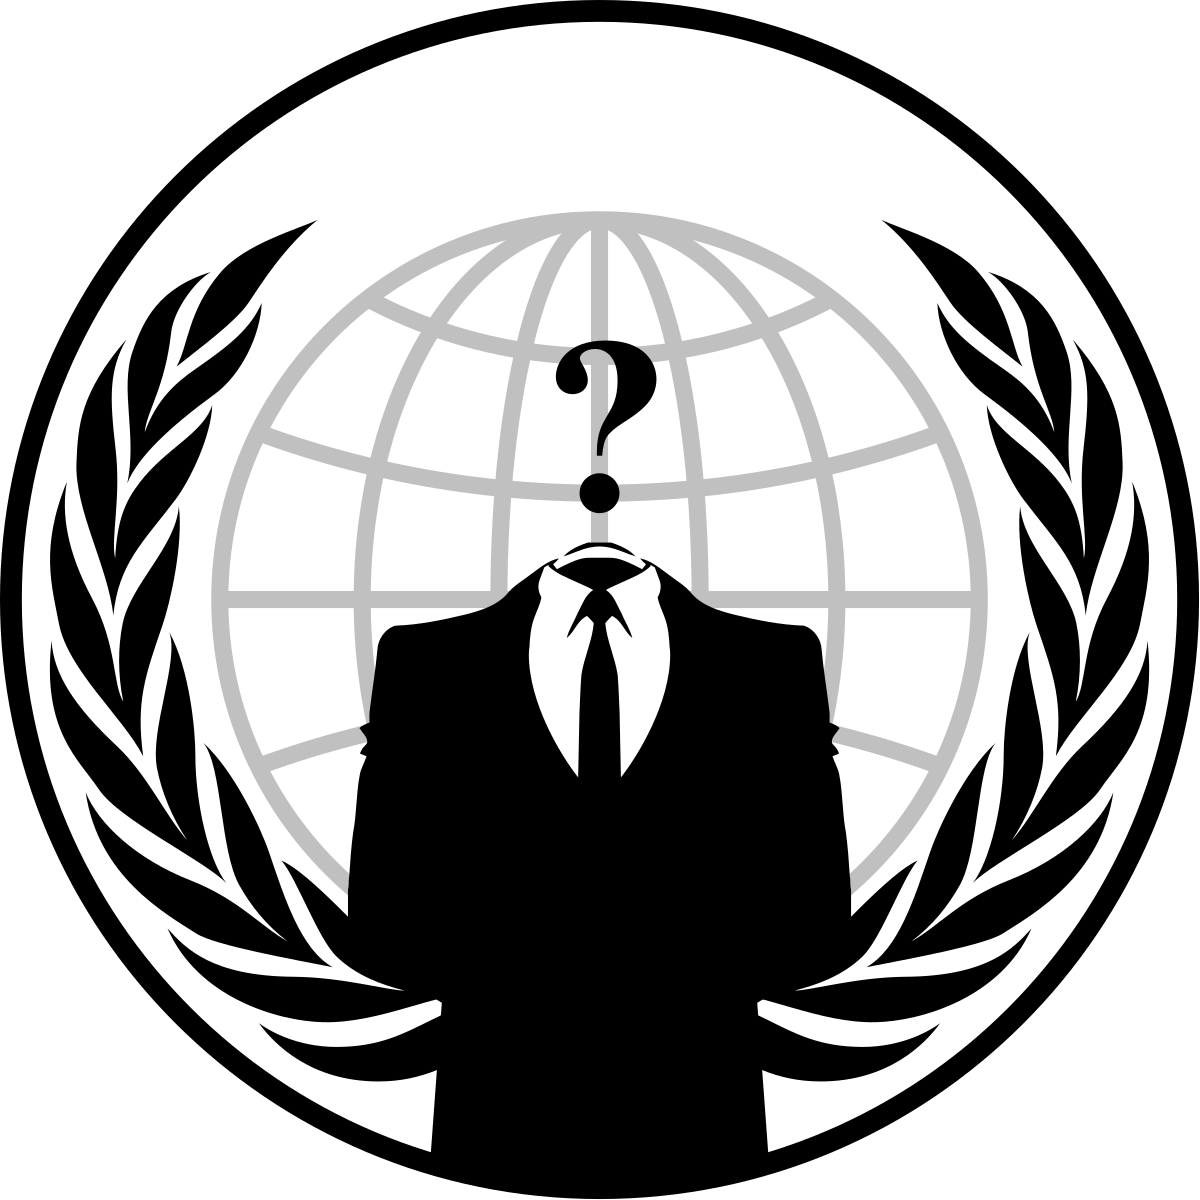 Anonymous Group Wikipedia